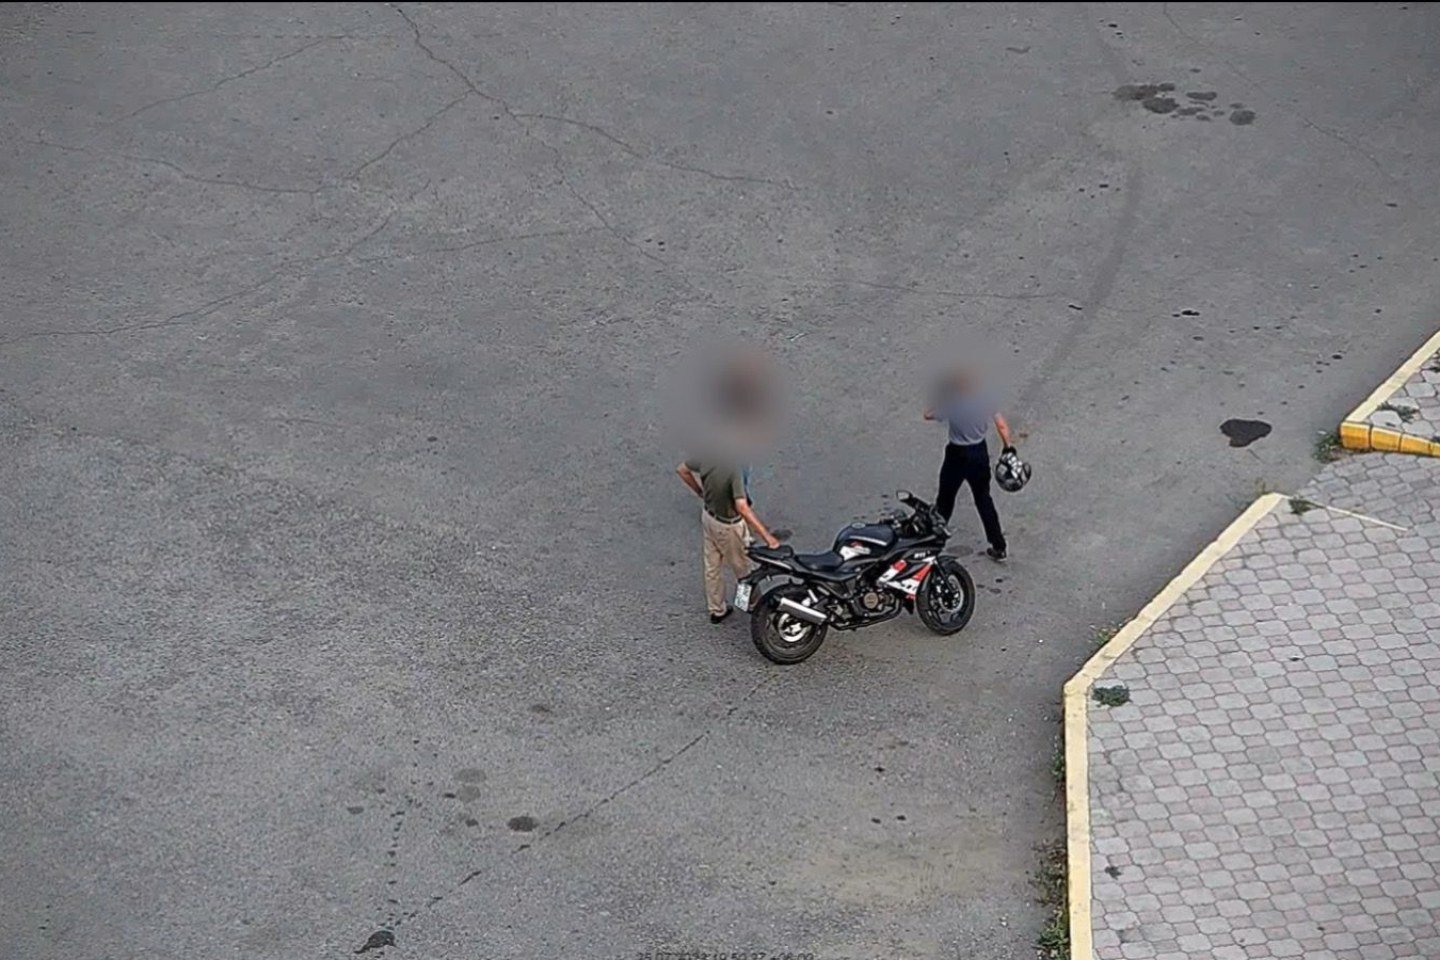 Происшествия в Казахстане и мире / Криминальные новости / Спортивный мотоцикл угнали с парковки в Усть-Каменогорске